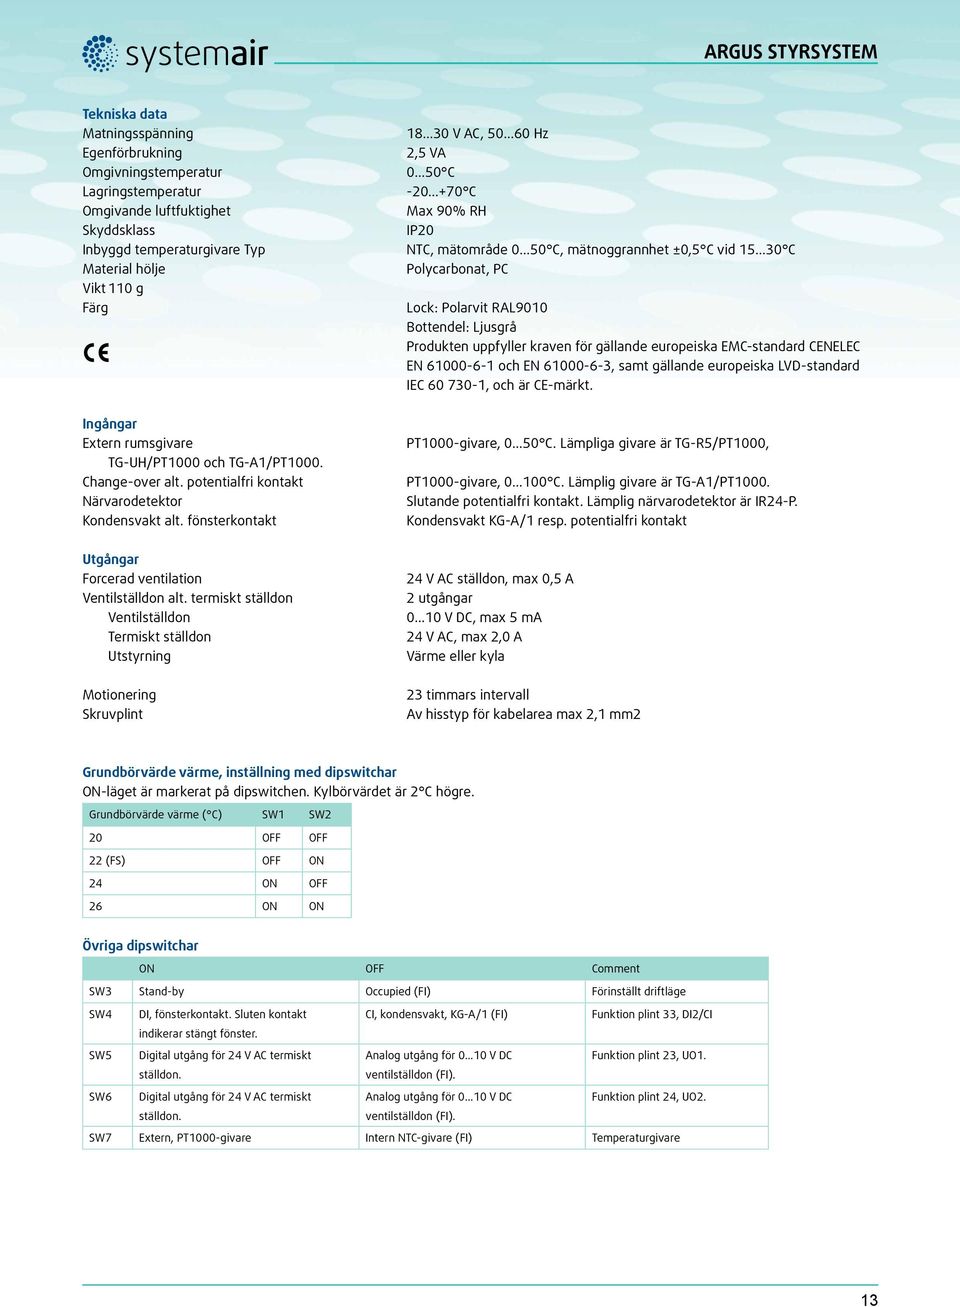 ..30 C Polycarbonat, PC Lock: Polarvit RAL9010 Bottendel: Ljusgrå Produkten uppfyller kraven för gällande europeiska EMC-standard CENELEC EN 61000-6-1 och EN 61000-6-3, samt gällande europeiska